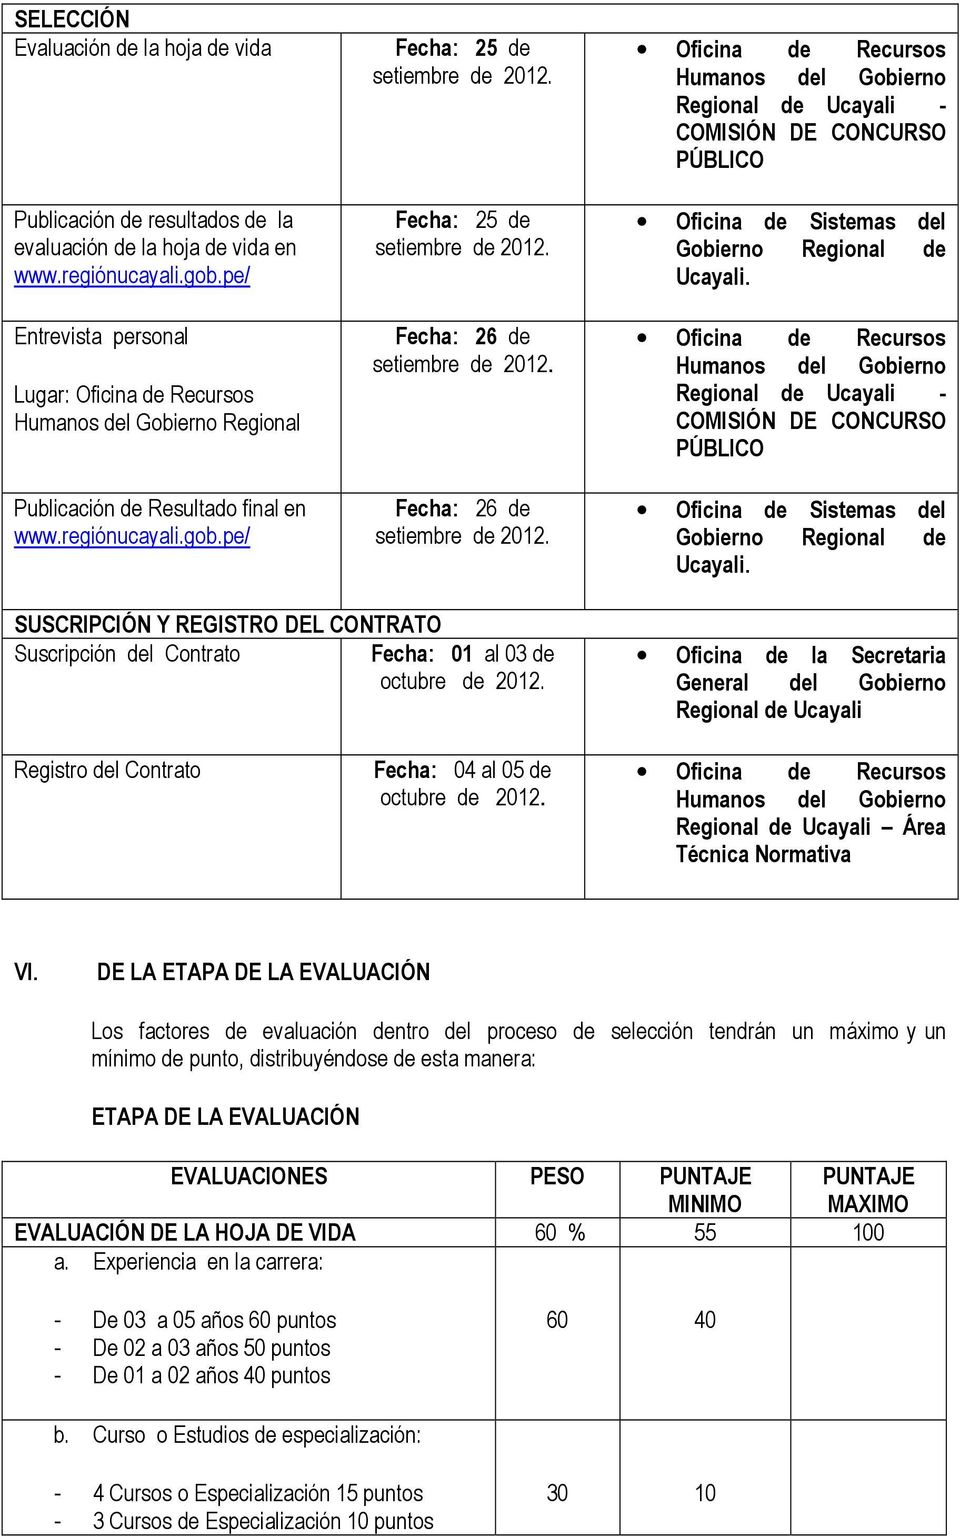 Suscripción del Contrato Fecha: 01 al 03 de octubre de 2012. Oficina de la Secretaria General del Gobierno Regional de Ucayali Registro del Contrato Fecha: 04 al 05 de octubre de 2012.